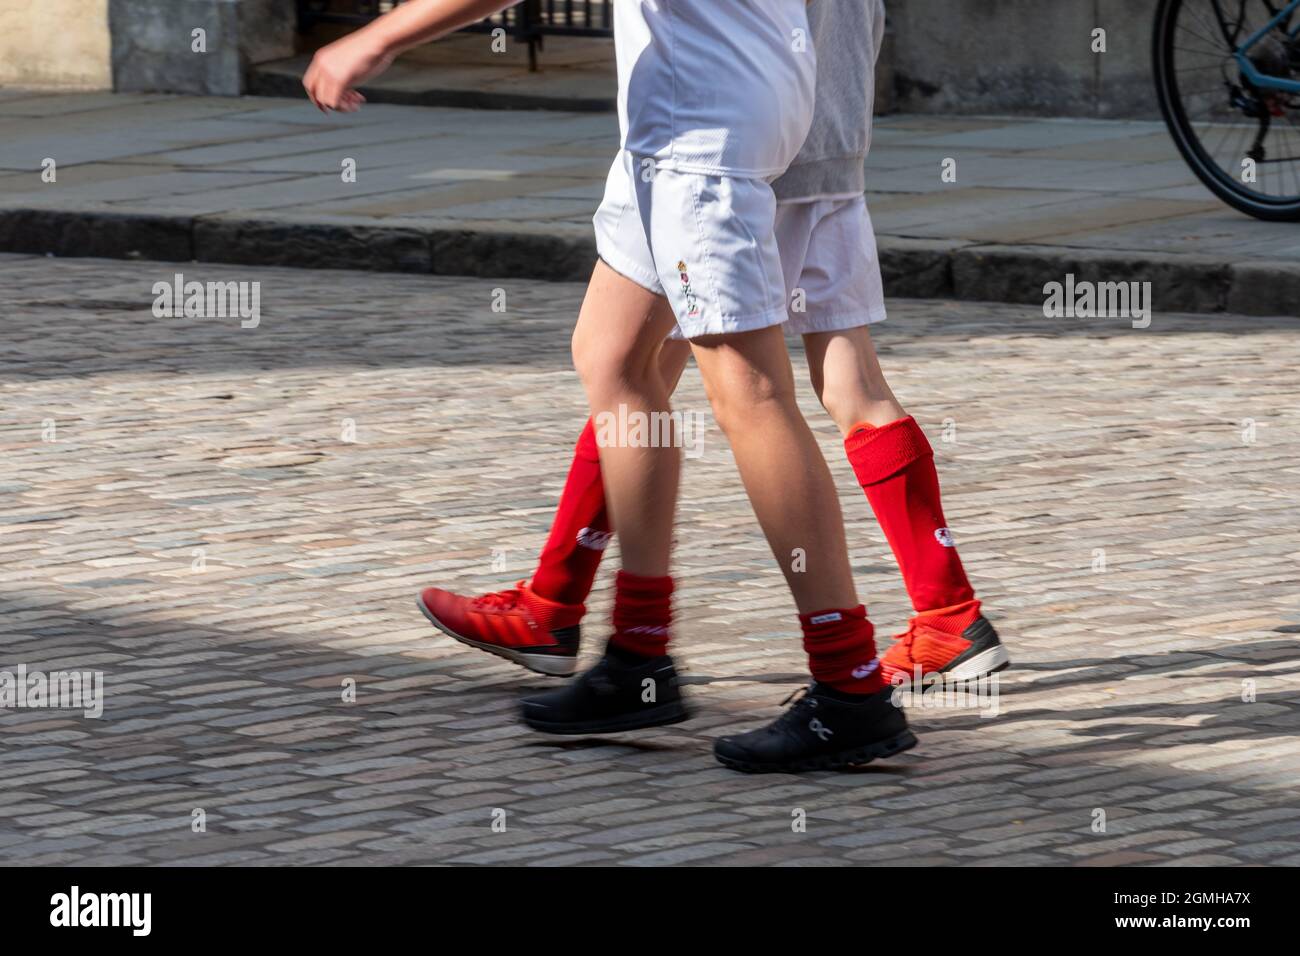 Zwei Schuljungen, die in Sportkleidung eine gepflasterte Straße entlang gehen - Nahaufnahme ihrer Beine in roten Fußballsocken und weißen Shorts Stockfoto